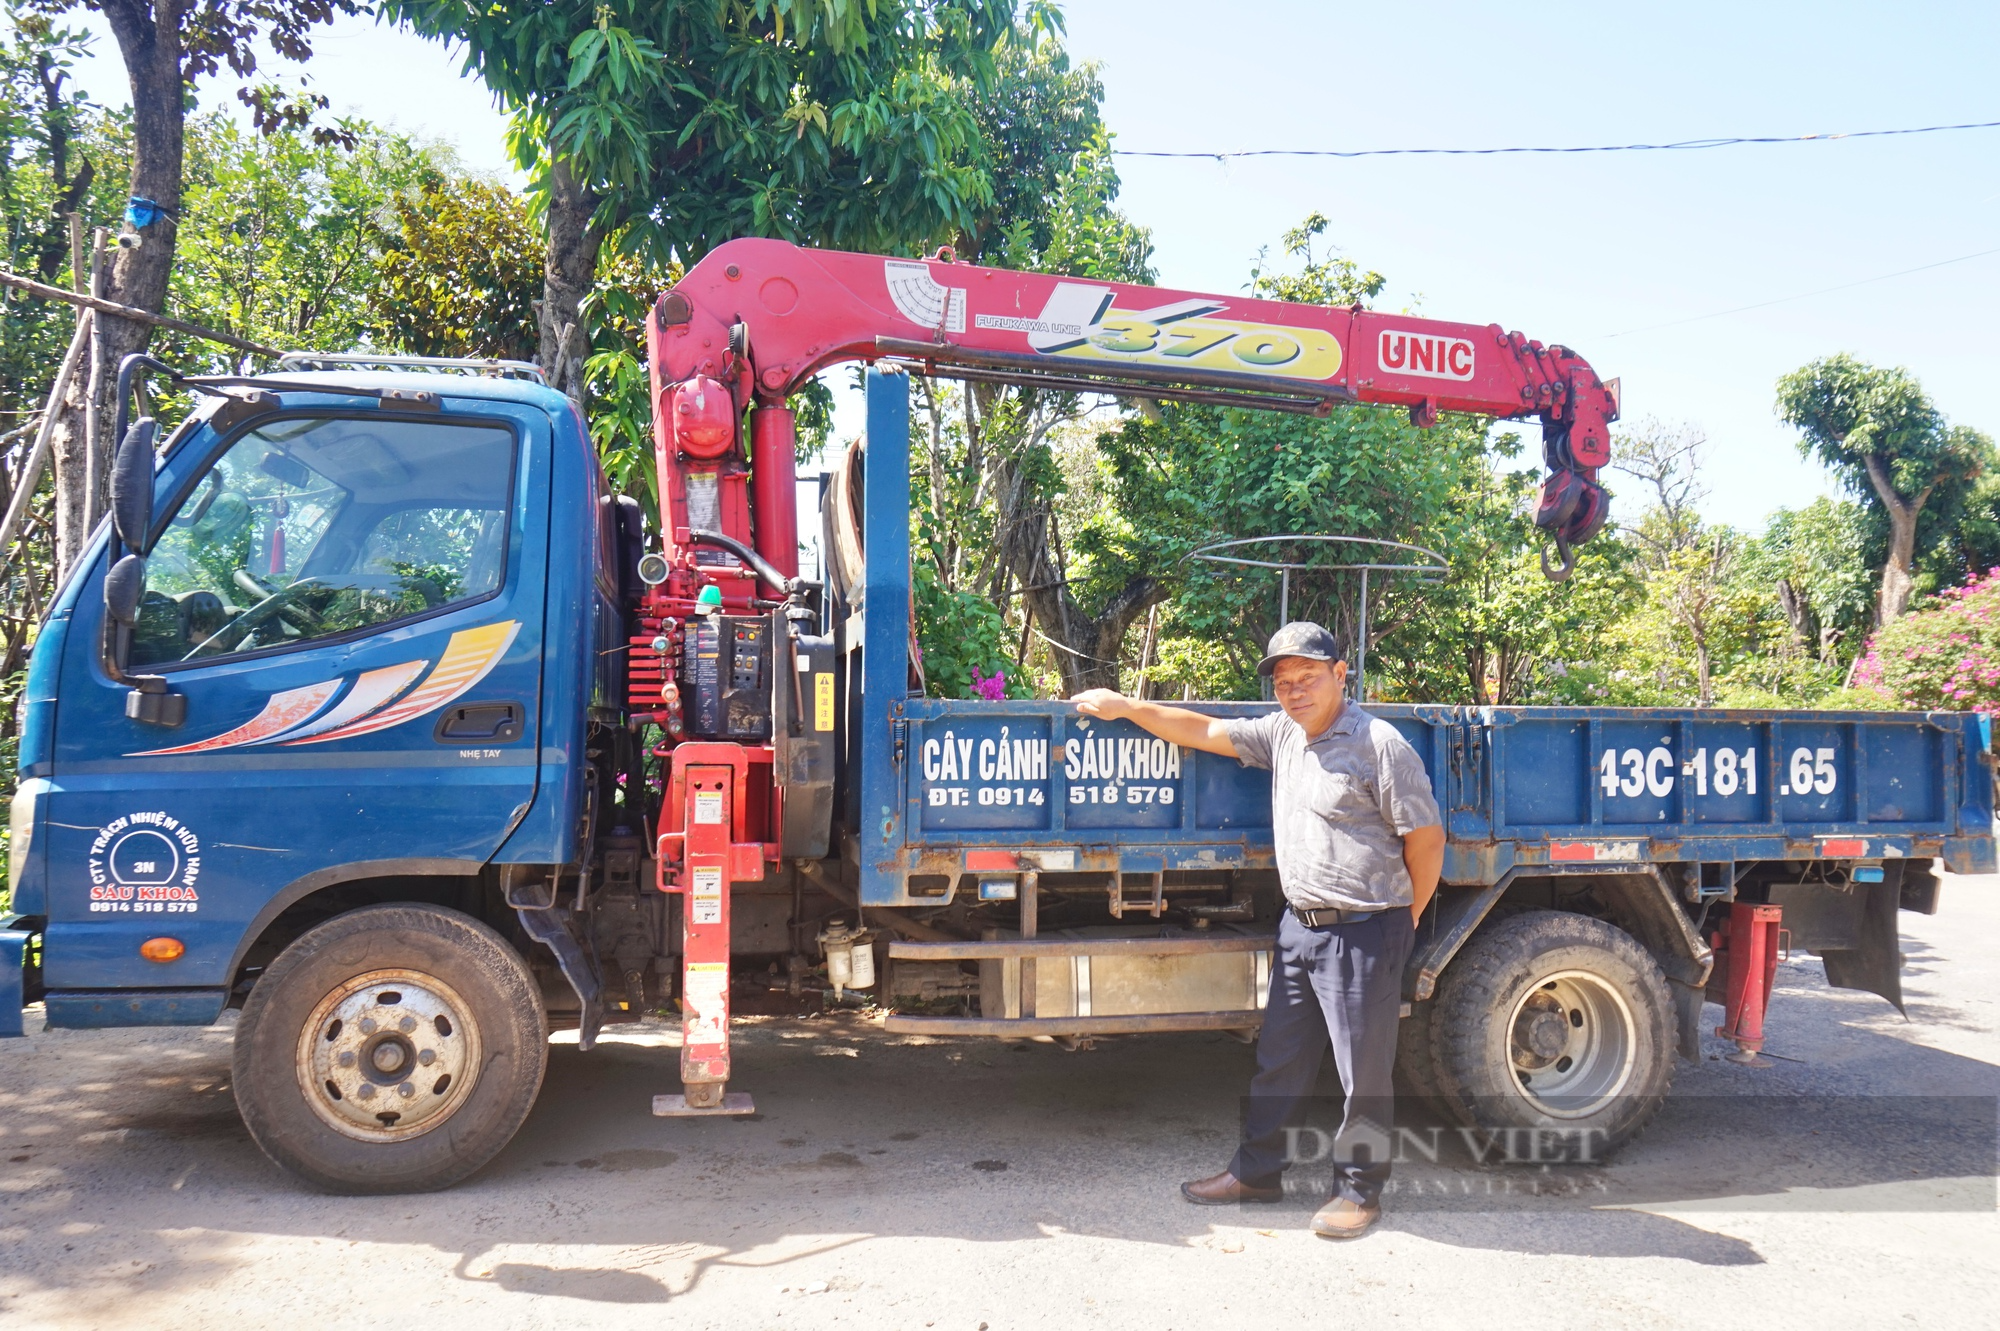 Bỏ nghề lái xe tải, U50 Đà Nẵng trồng cây cảnh thu lãi 400 triệu đồng mỗi năm - Ảnh 6.